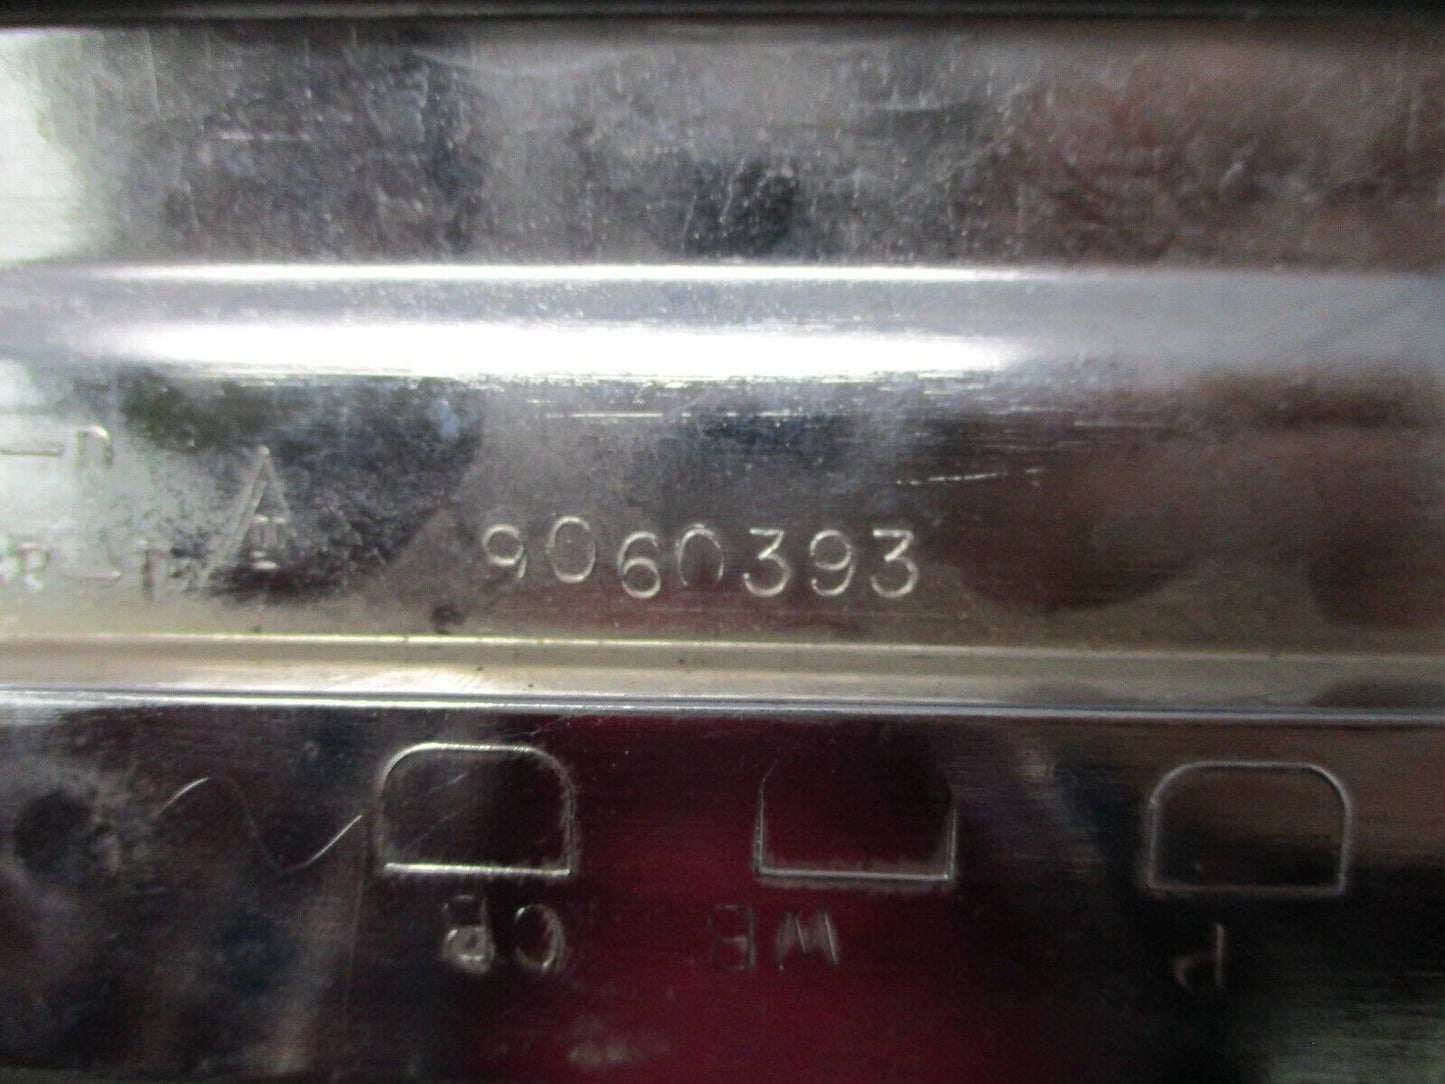 Harley Davidson OEM  Left Saddlebag Face Plate 90603-93